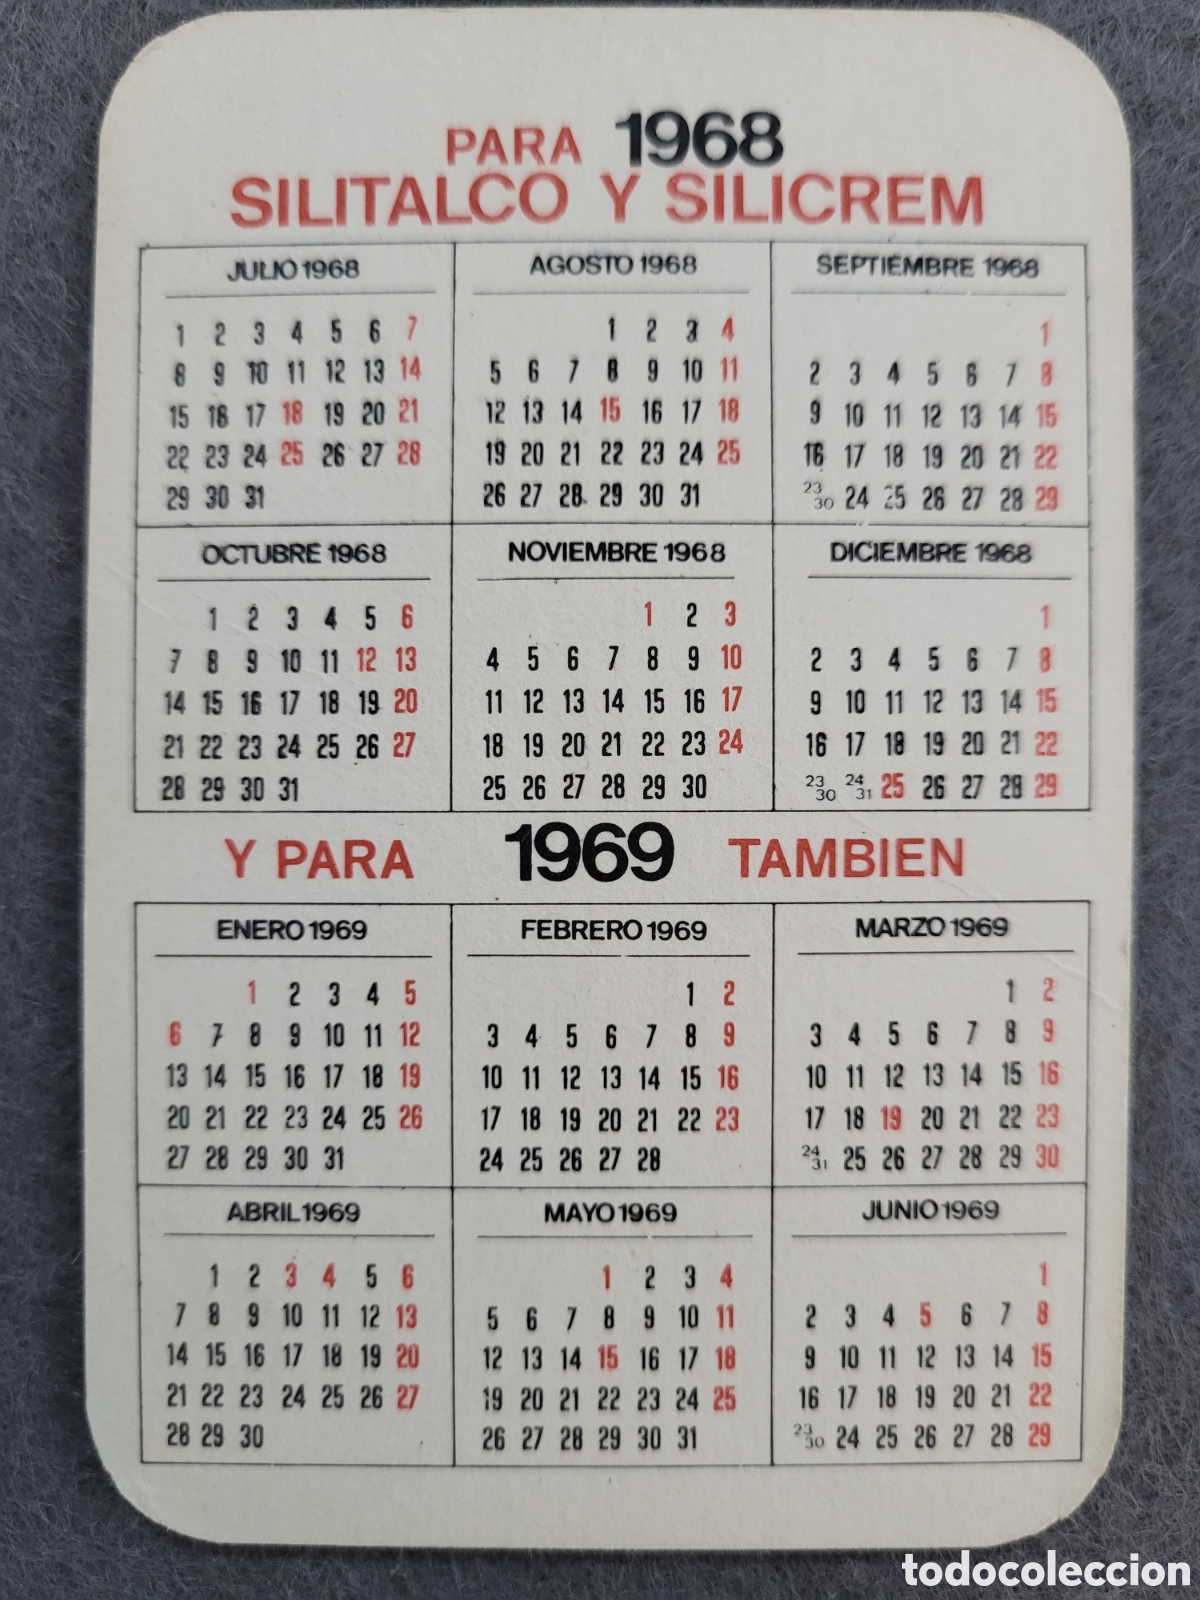 calendario de bolsillo publicitario 1968-1969 l - Compra venta en  todocoleccion